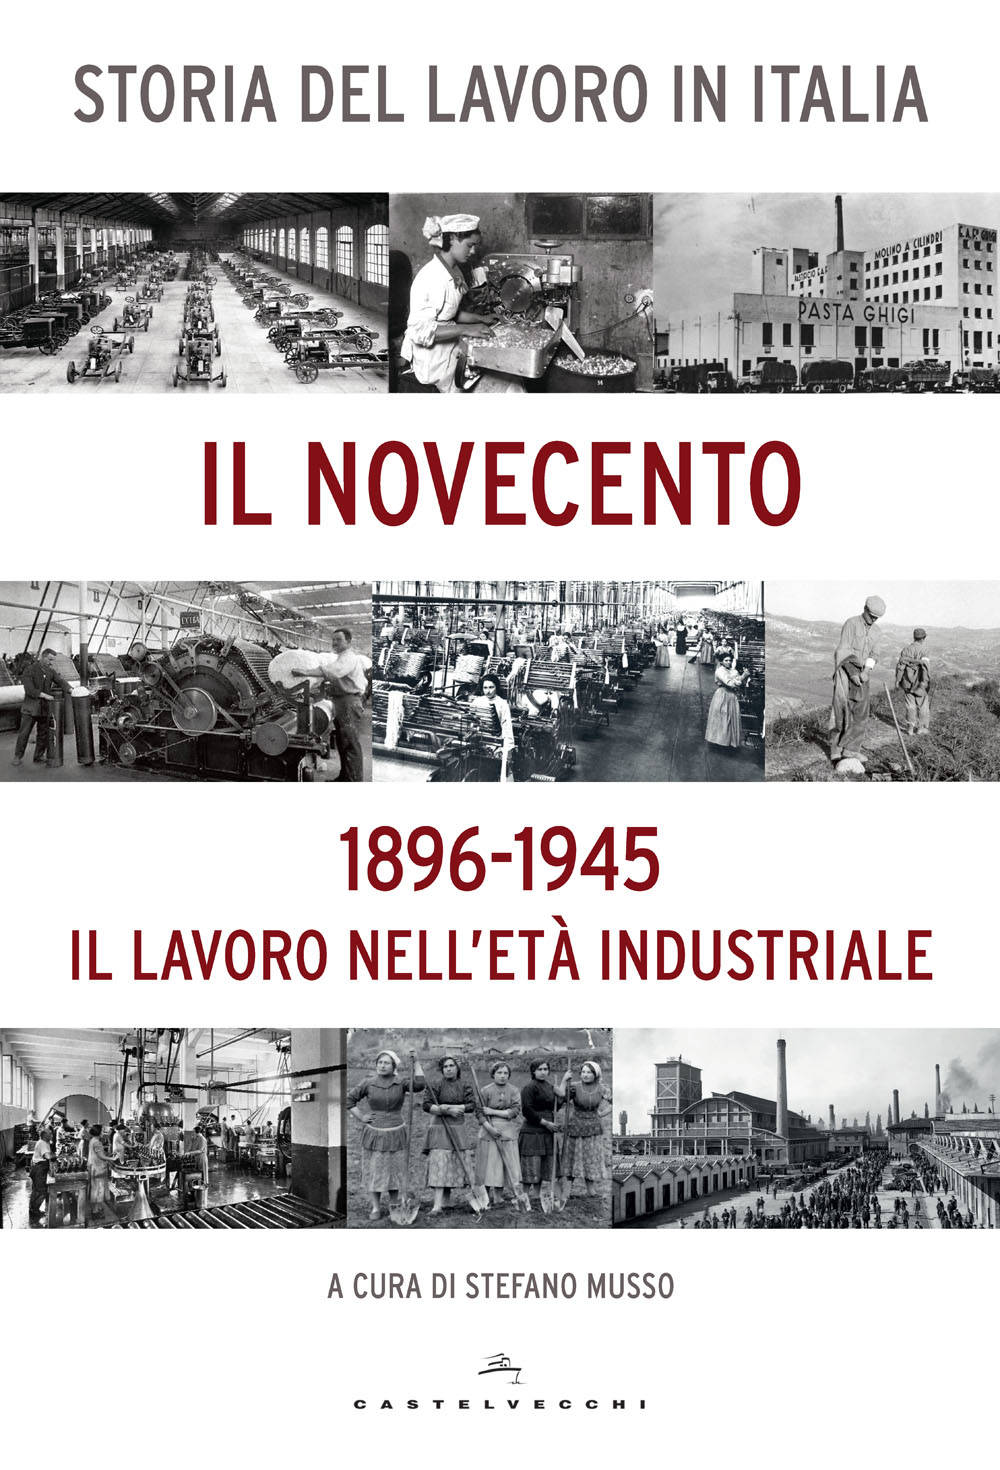 La Cgil presenta la “Storia del lavoro in Italia”